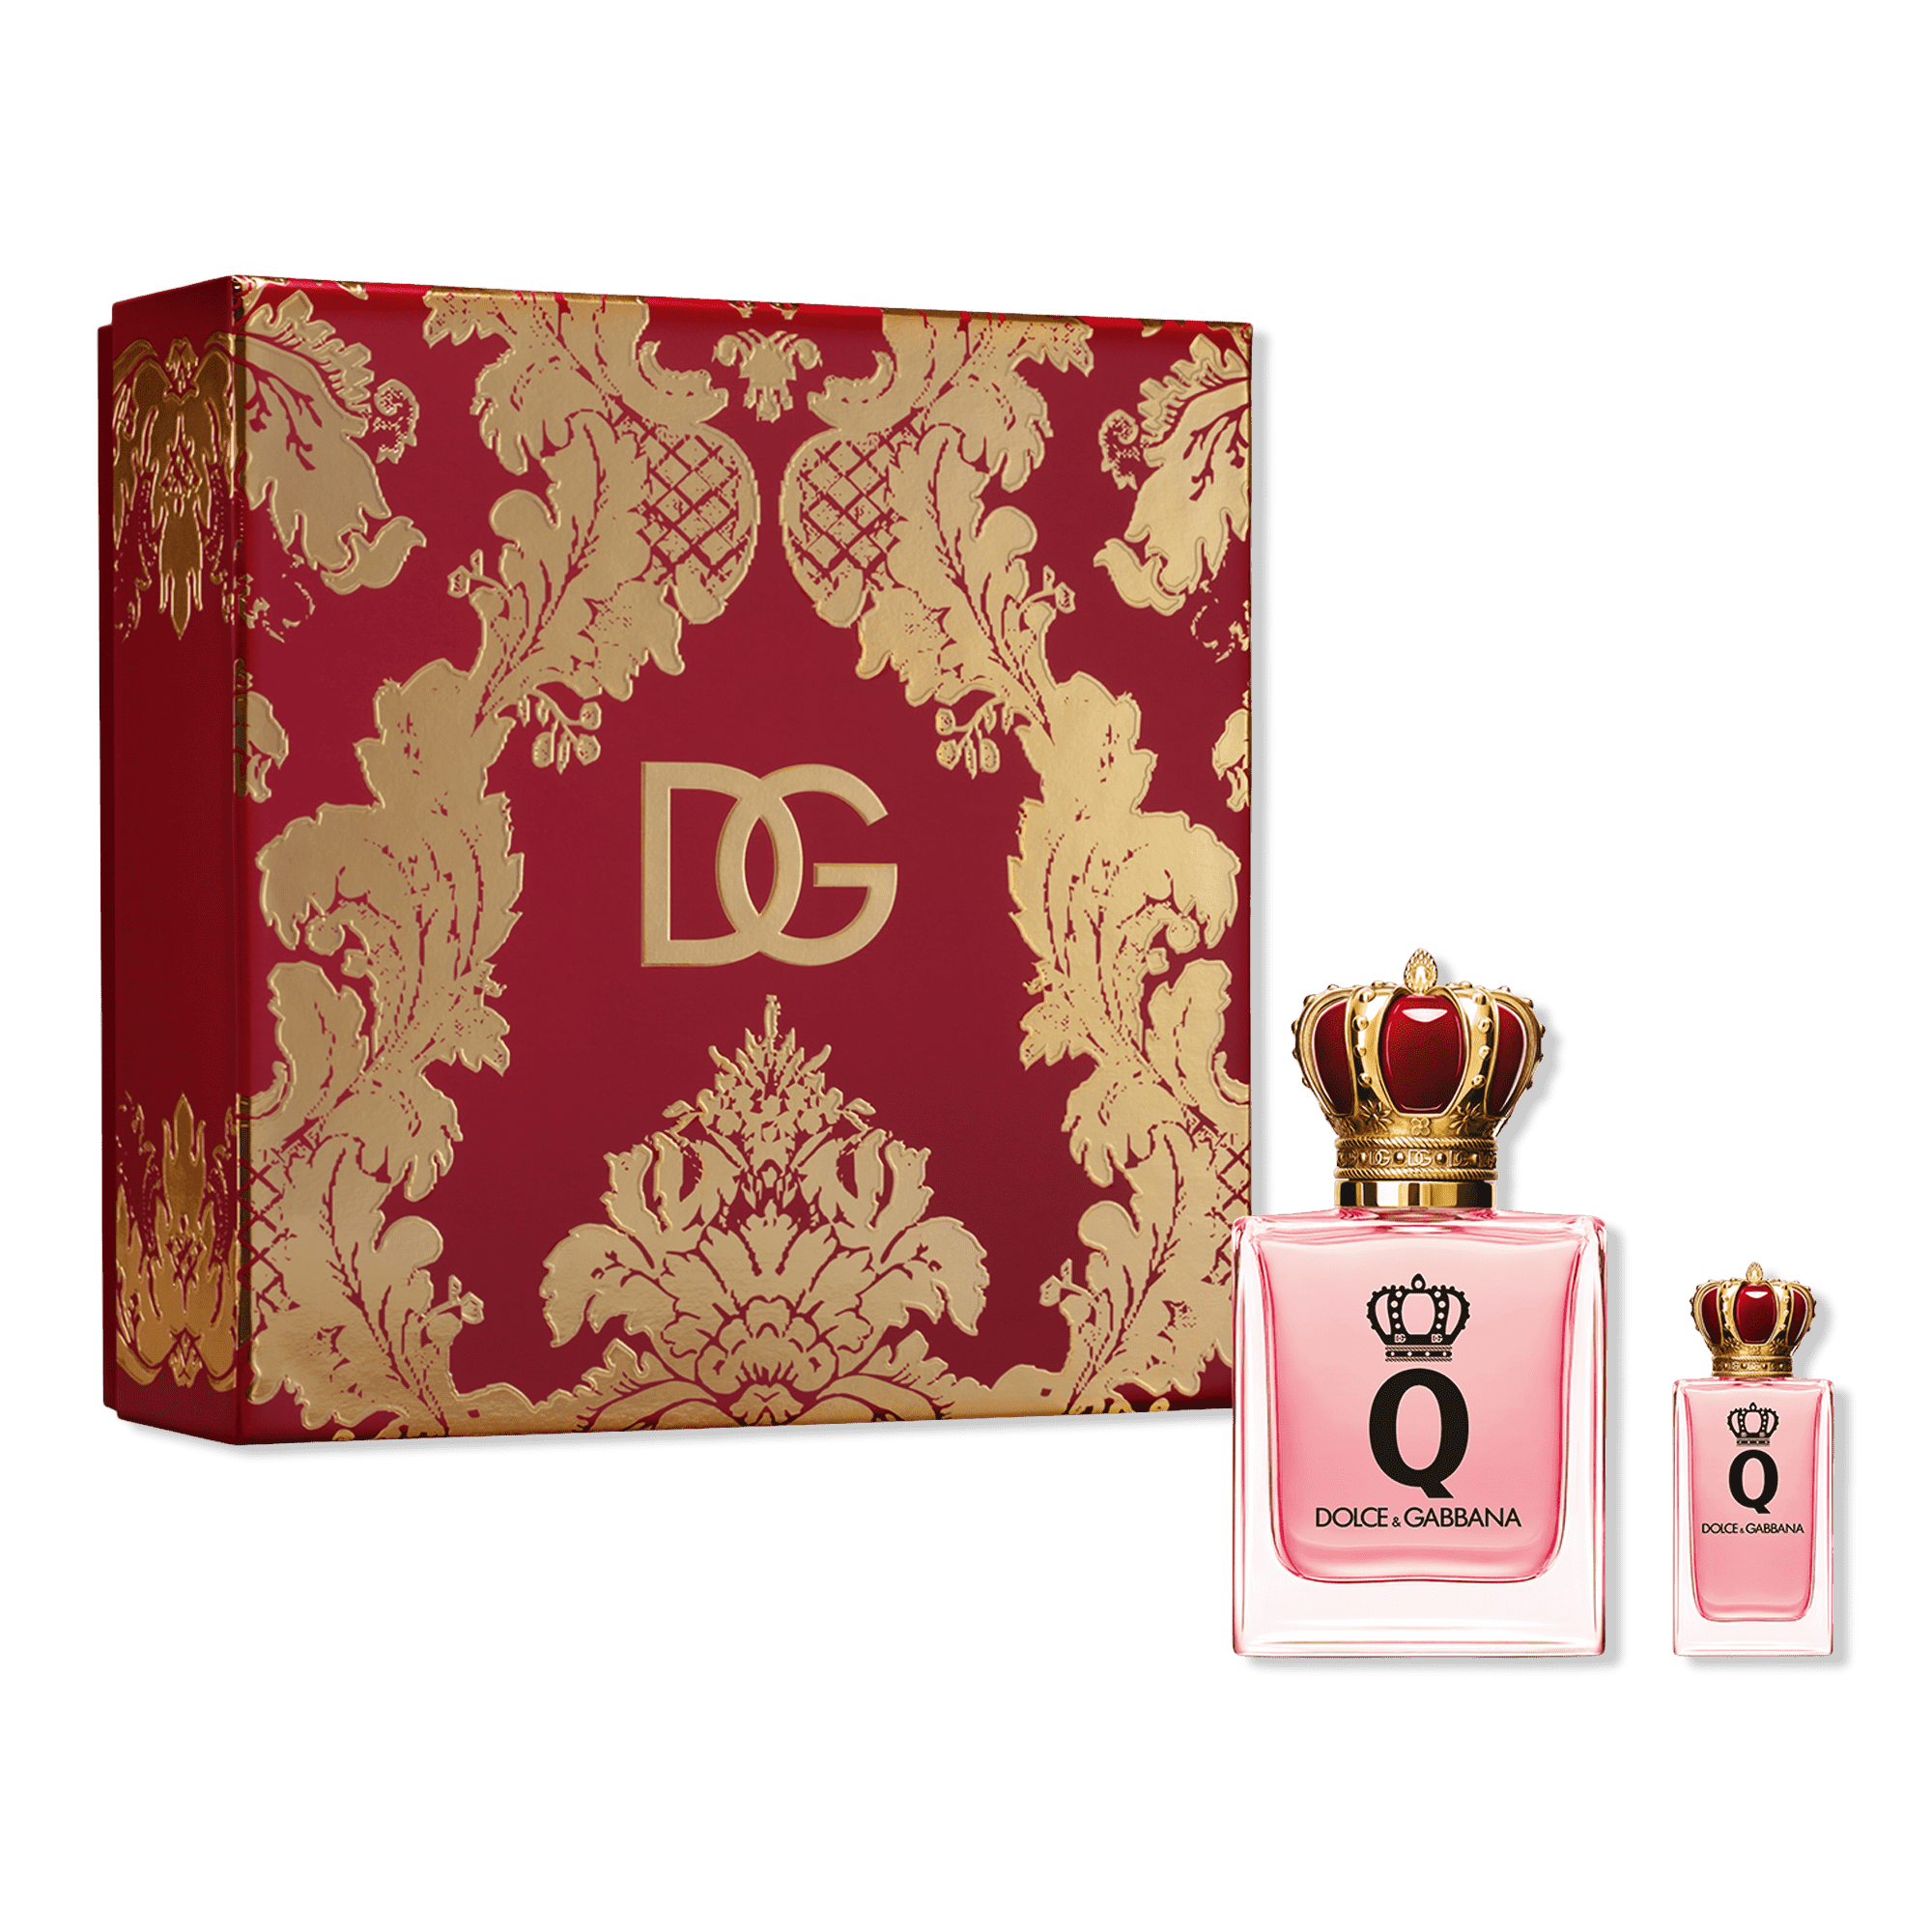 Q by Dolce&Gabbana Eau de Parfum 2 Piece